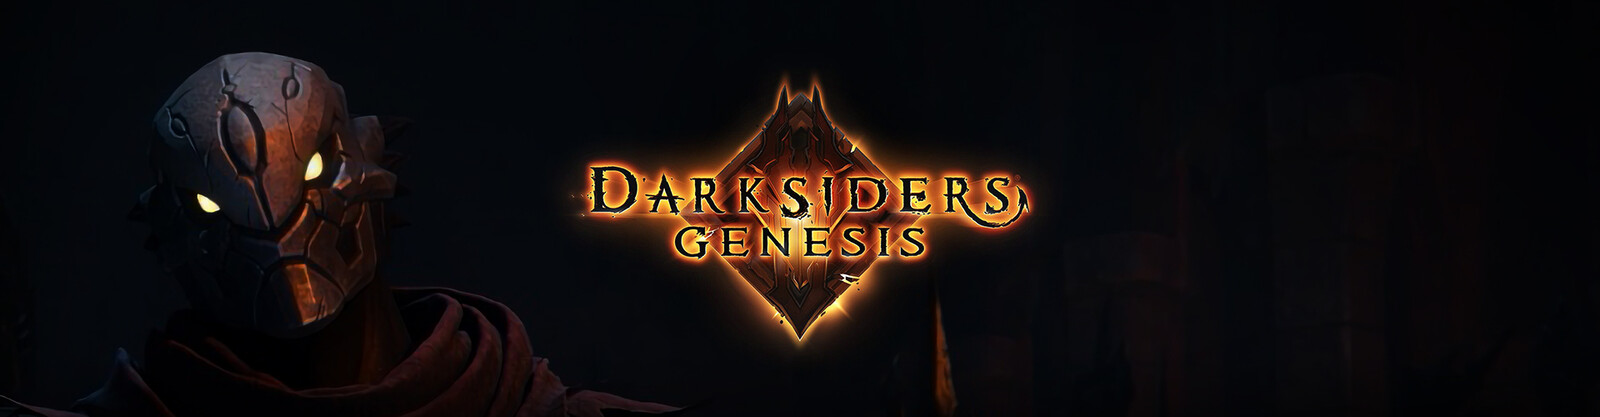 Darksiders - Genesis